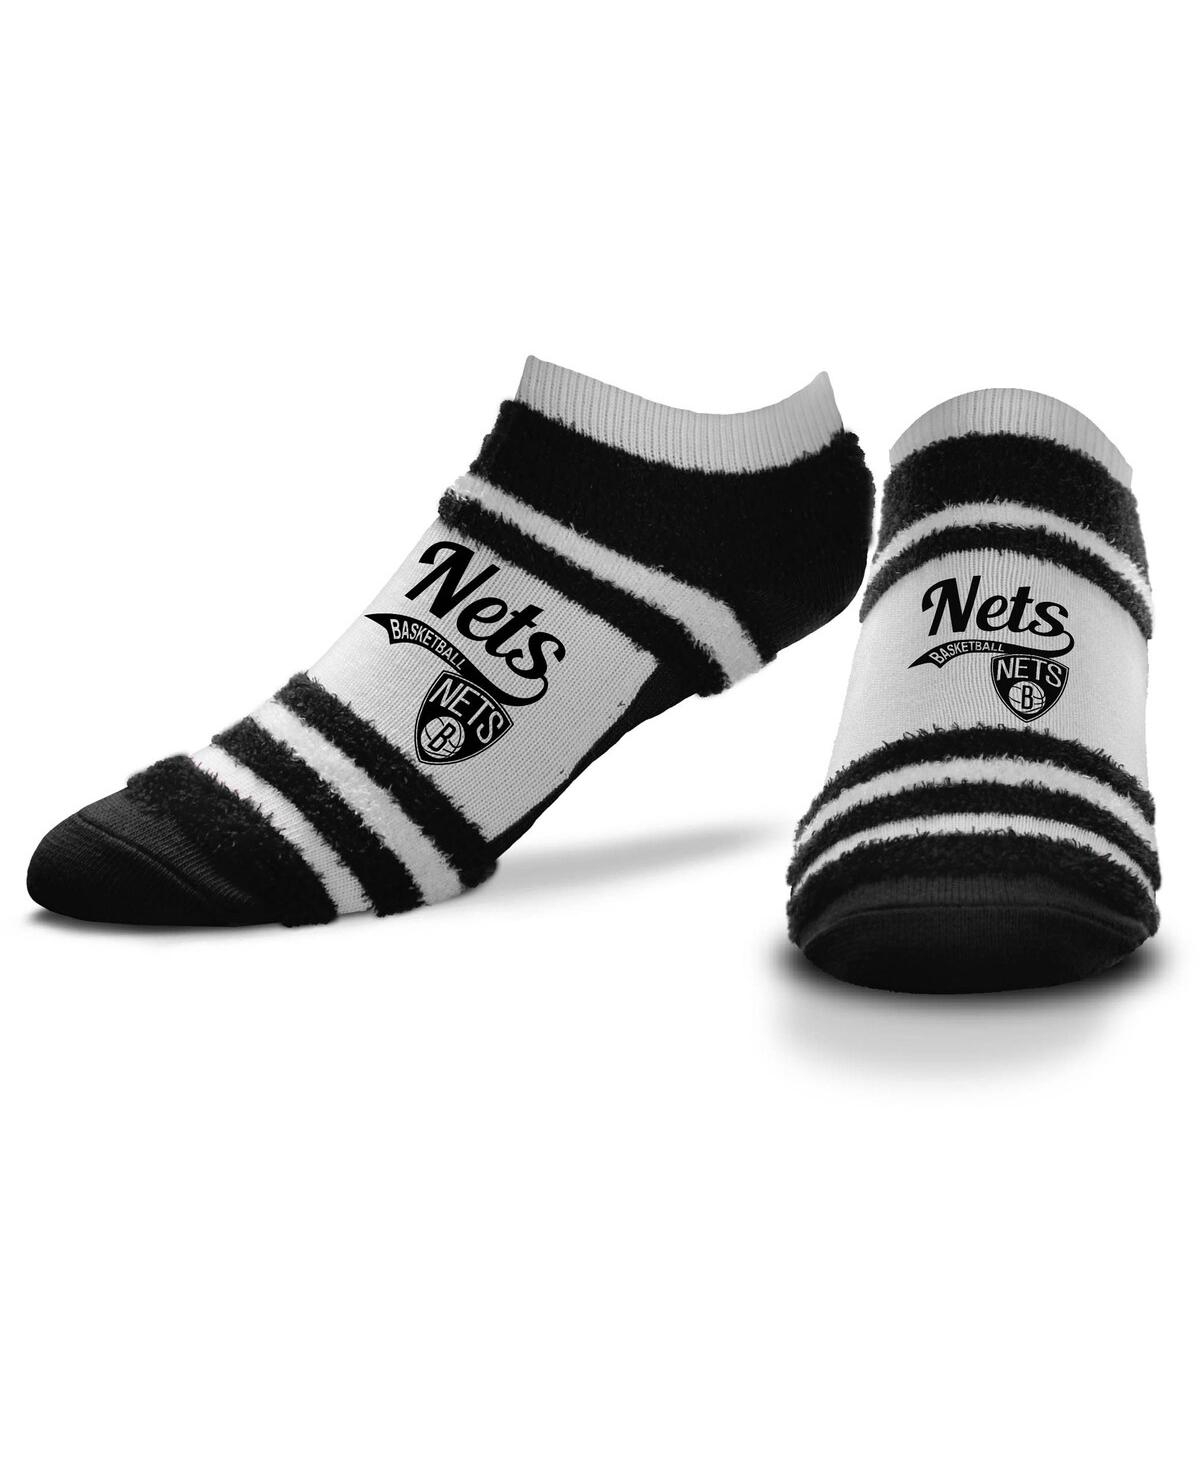 For Bare Feet Women's  Brooklyn Nets Block Stripe Fuzzy Ankle Socks In Black